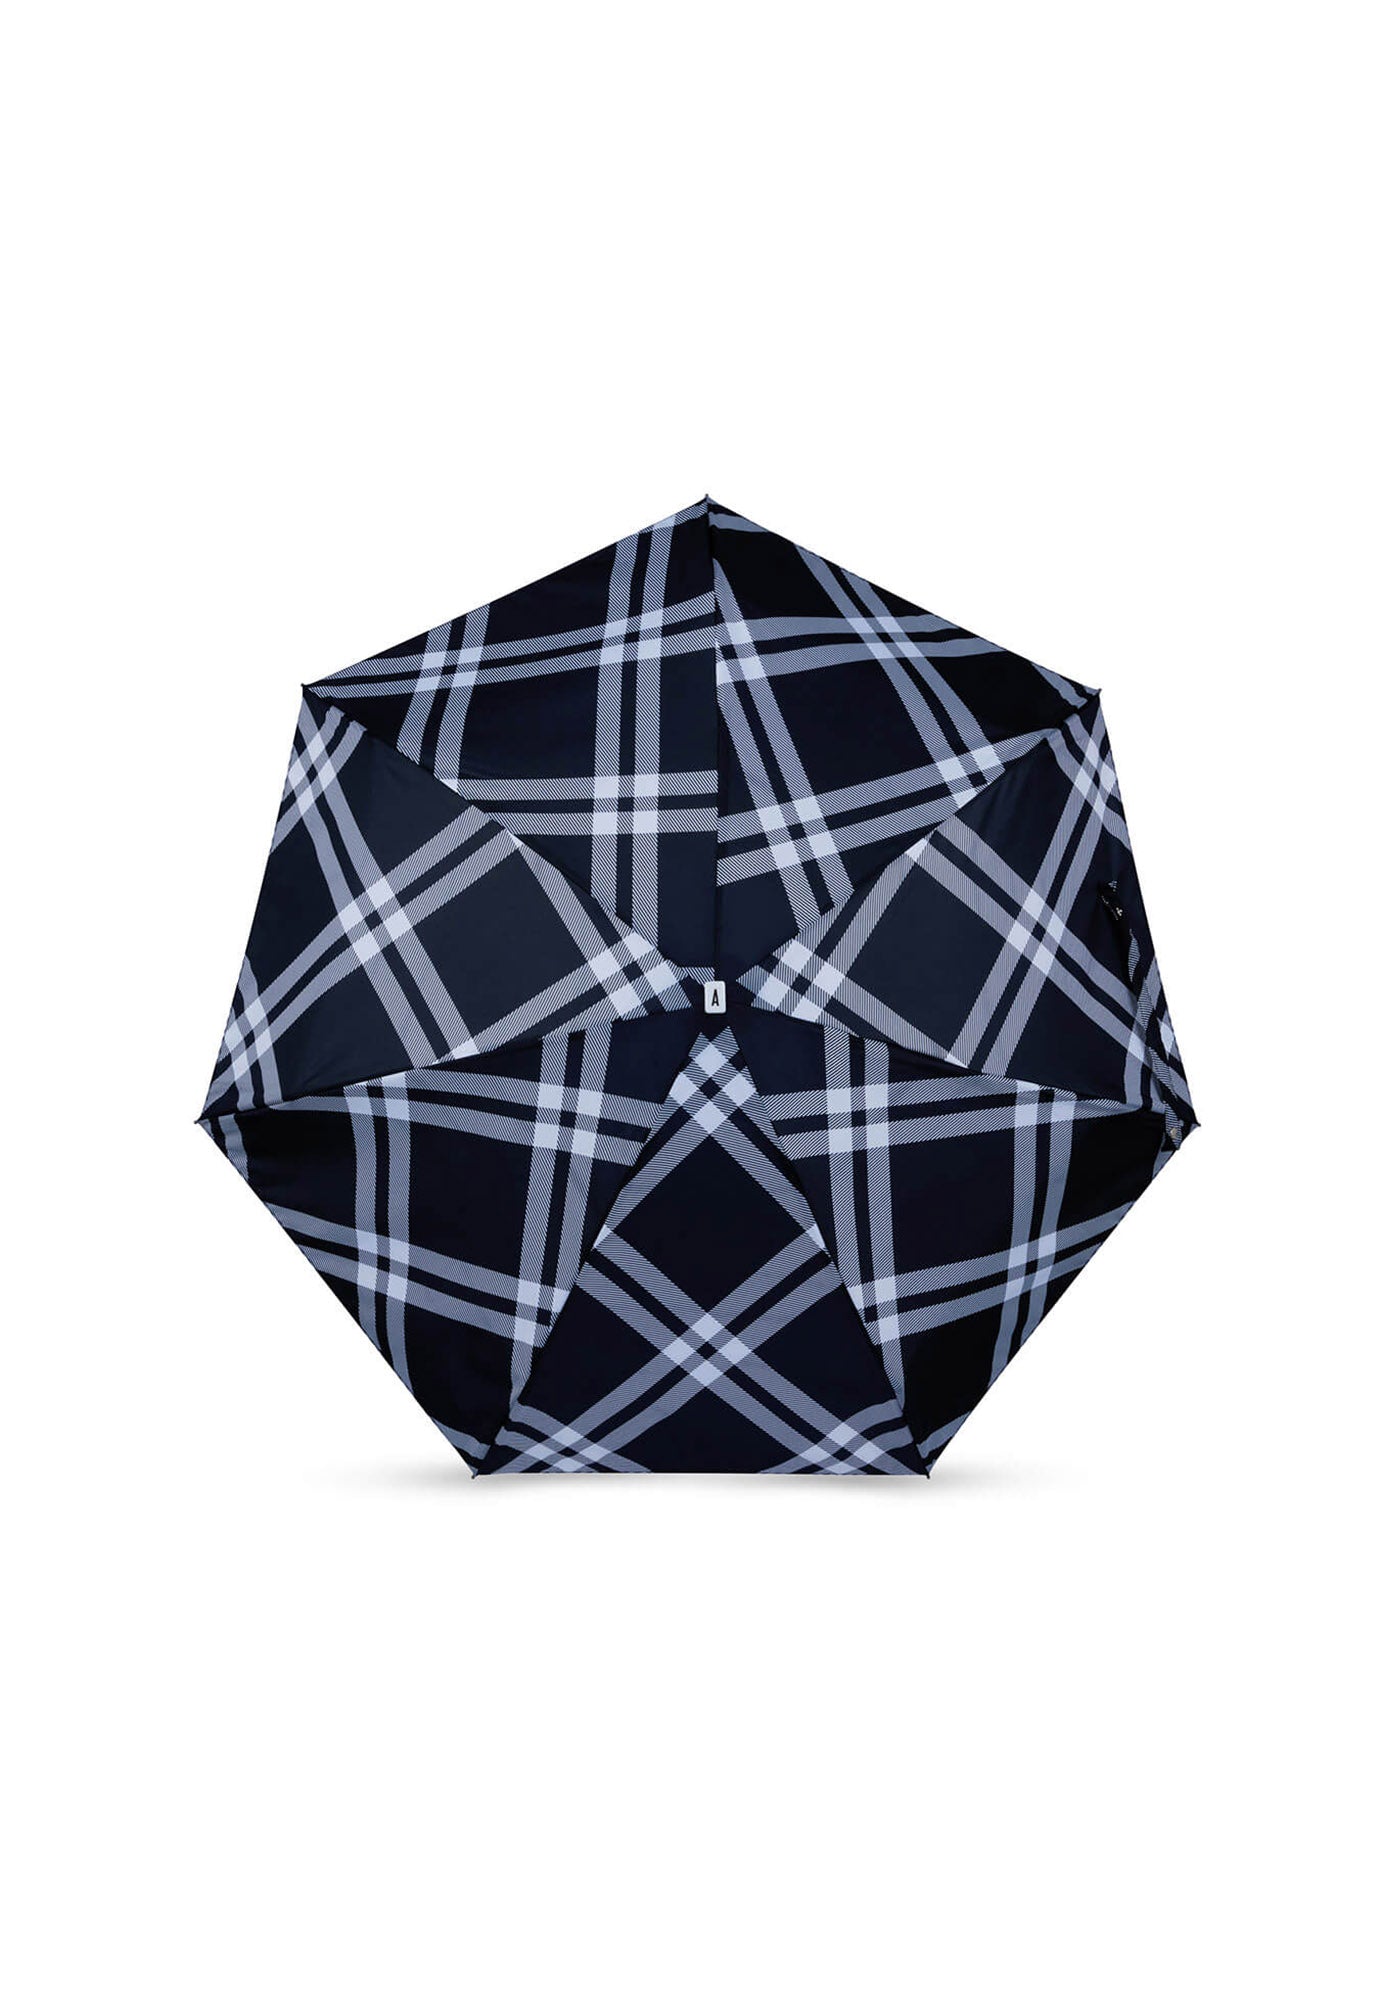 anatole - camden micro-umbrella - black & white tweed